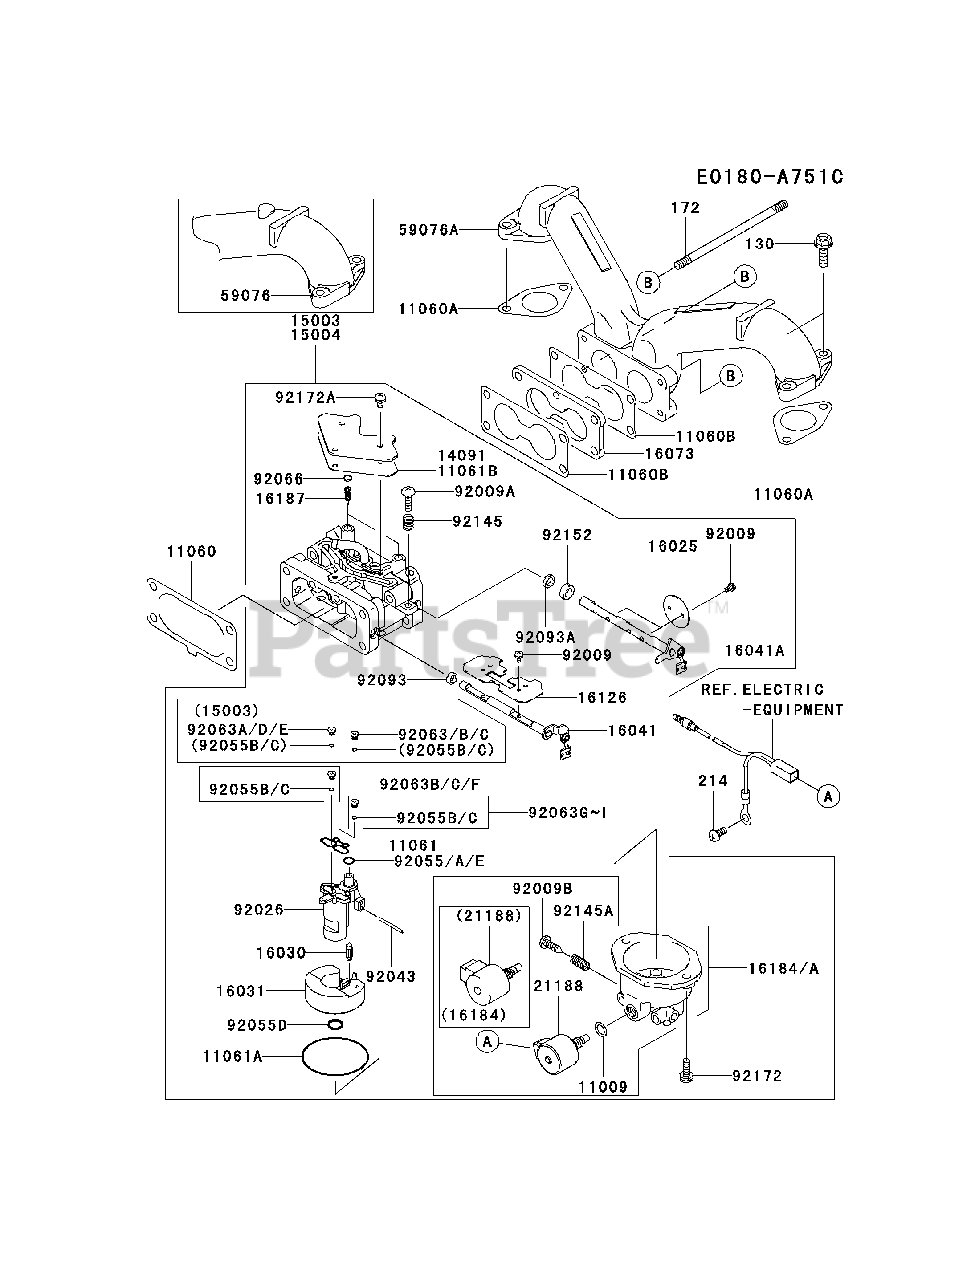 Kawasaki FH721V-ES13 - Kawasaki Engine Parts Lookup with Diagrams PartsTree